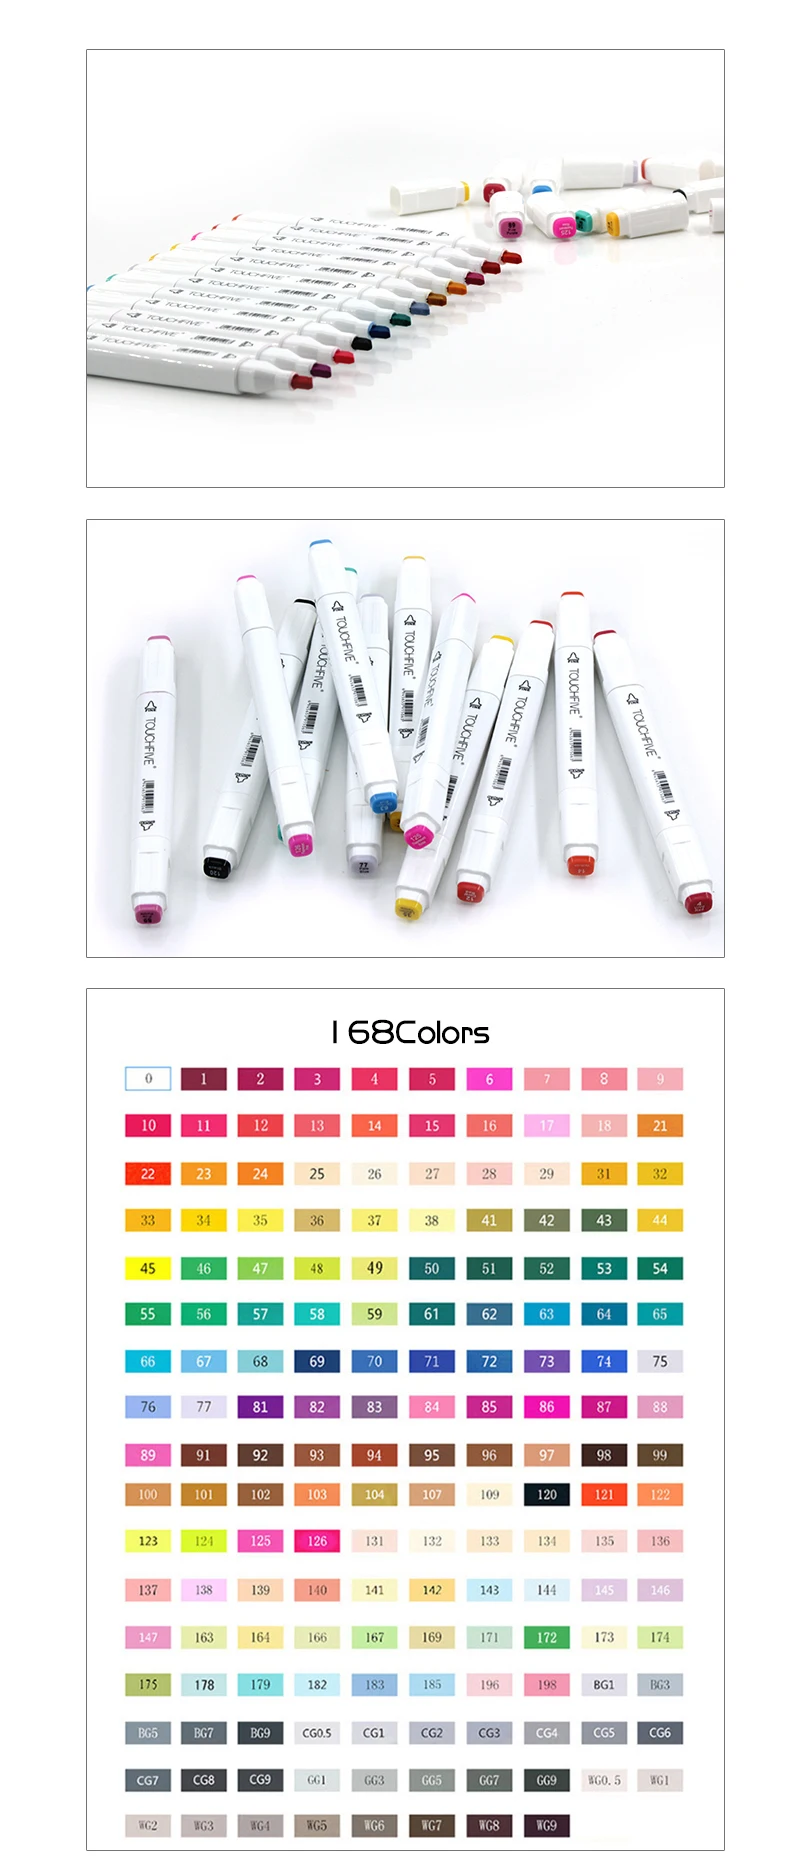 Двойная кисть Маркер Набор Touchfive маркер для граффити ручка набор Touchnew эскизы маркеры 60 цветов чертежная ручка манга дизайн для школы